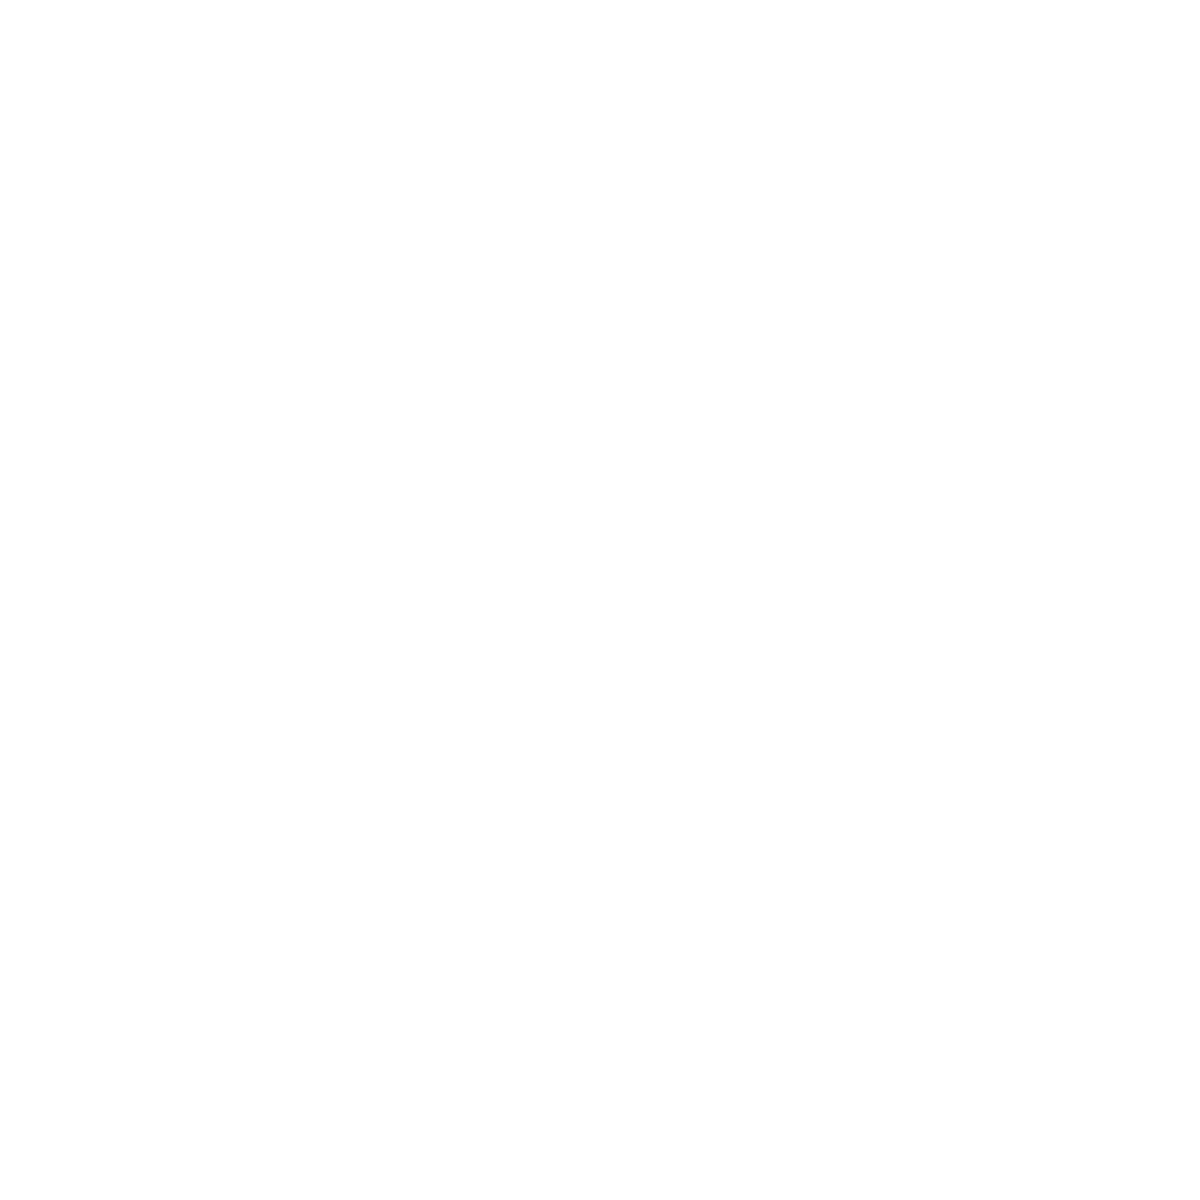 ManlyTherapy.com